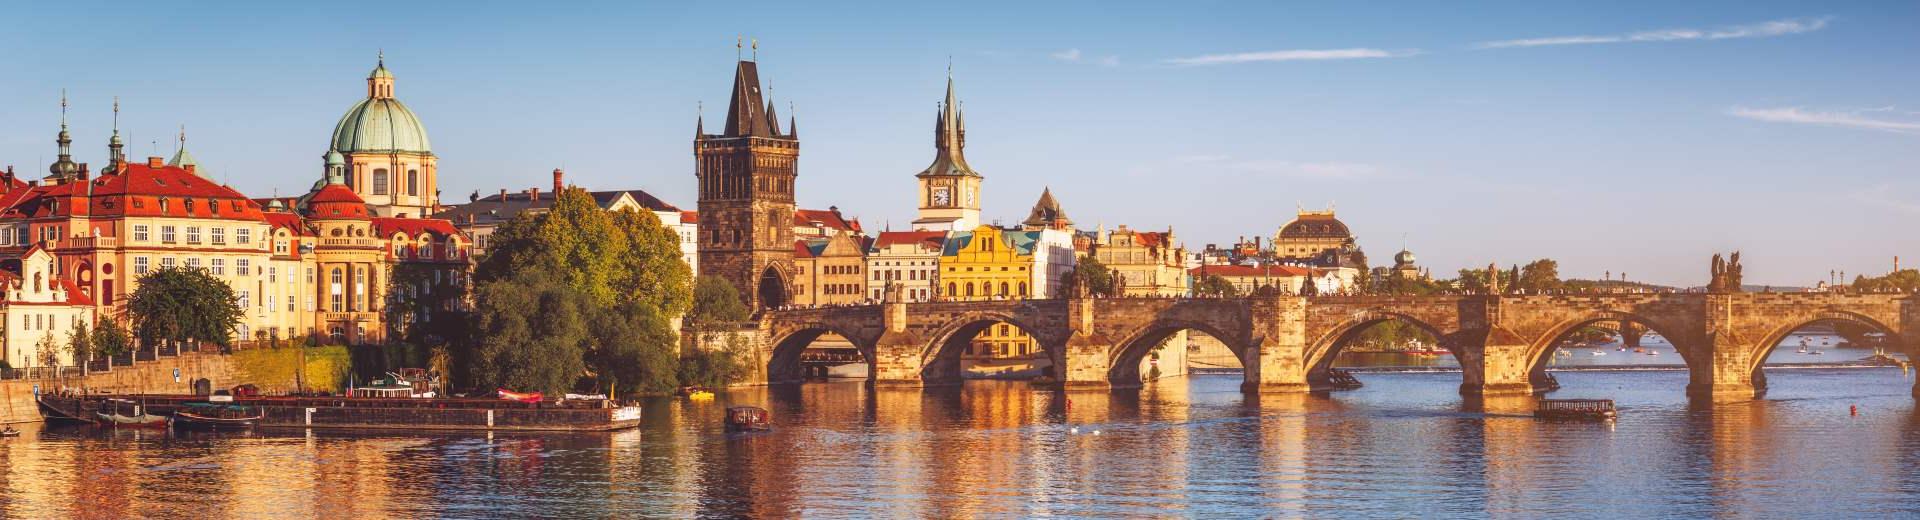 Atmosfera romantica per la tua casa vacanza a Praga, la "Città delle cento torri" - Casamundo